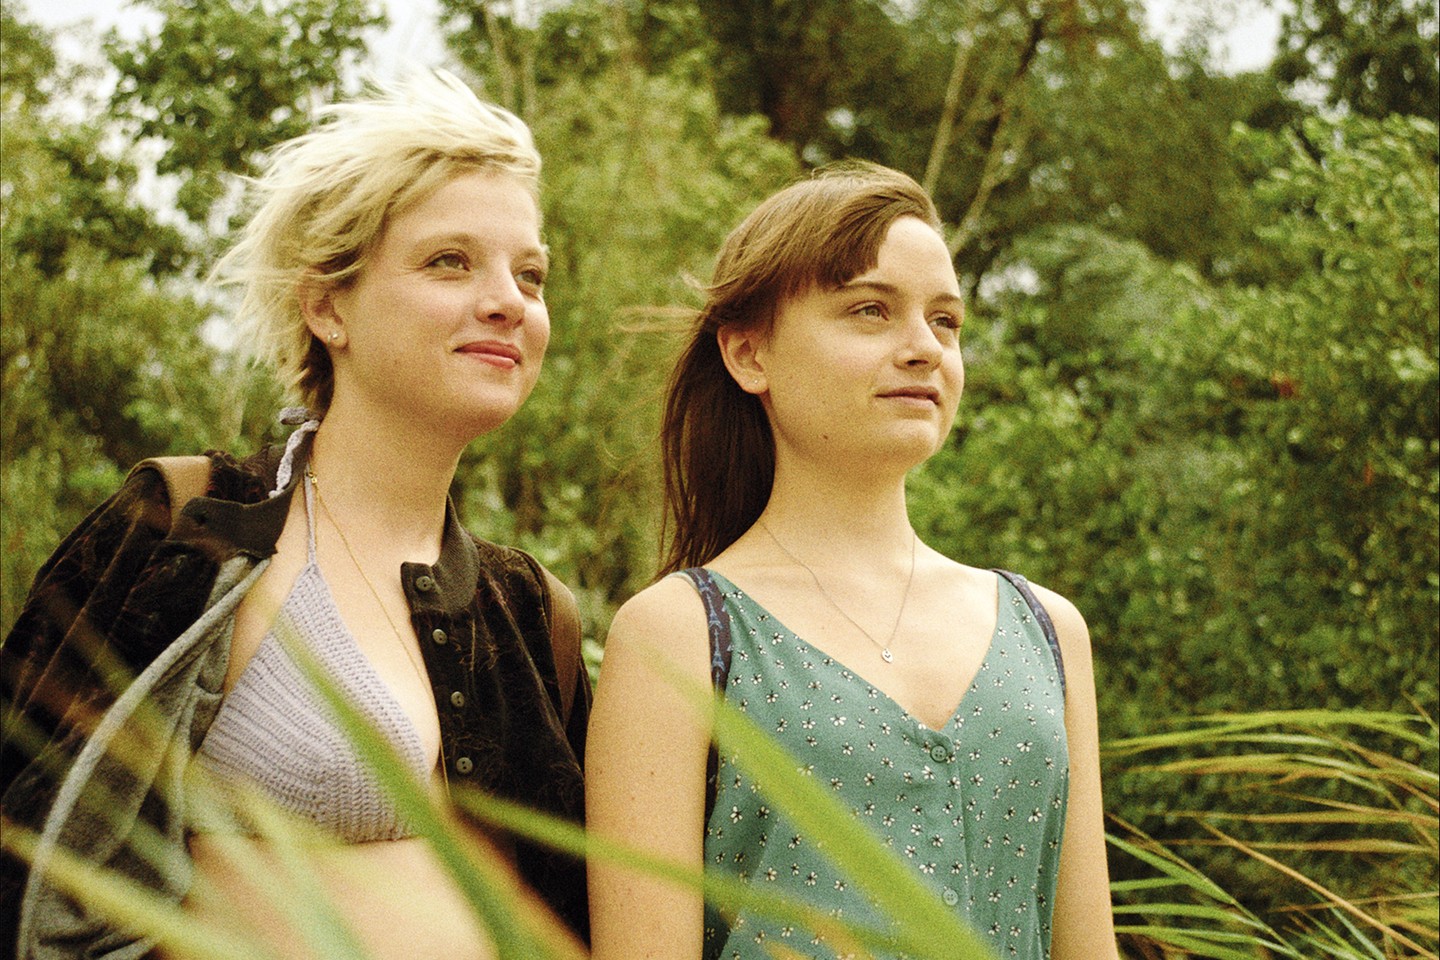 Zwei junge Frauen stehen draußen im Grünen und lächeln.